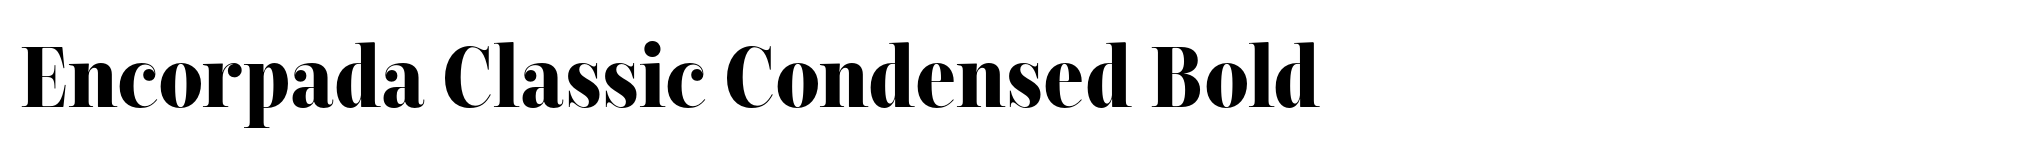 Encorpada Classic Condensed Bold image